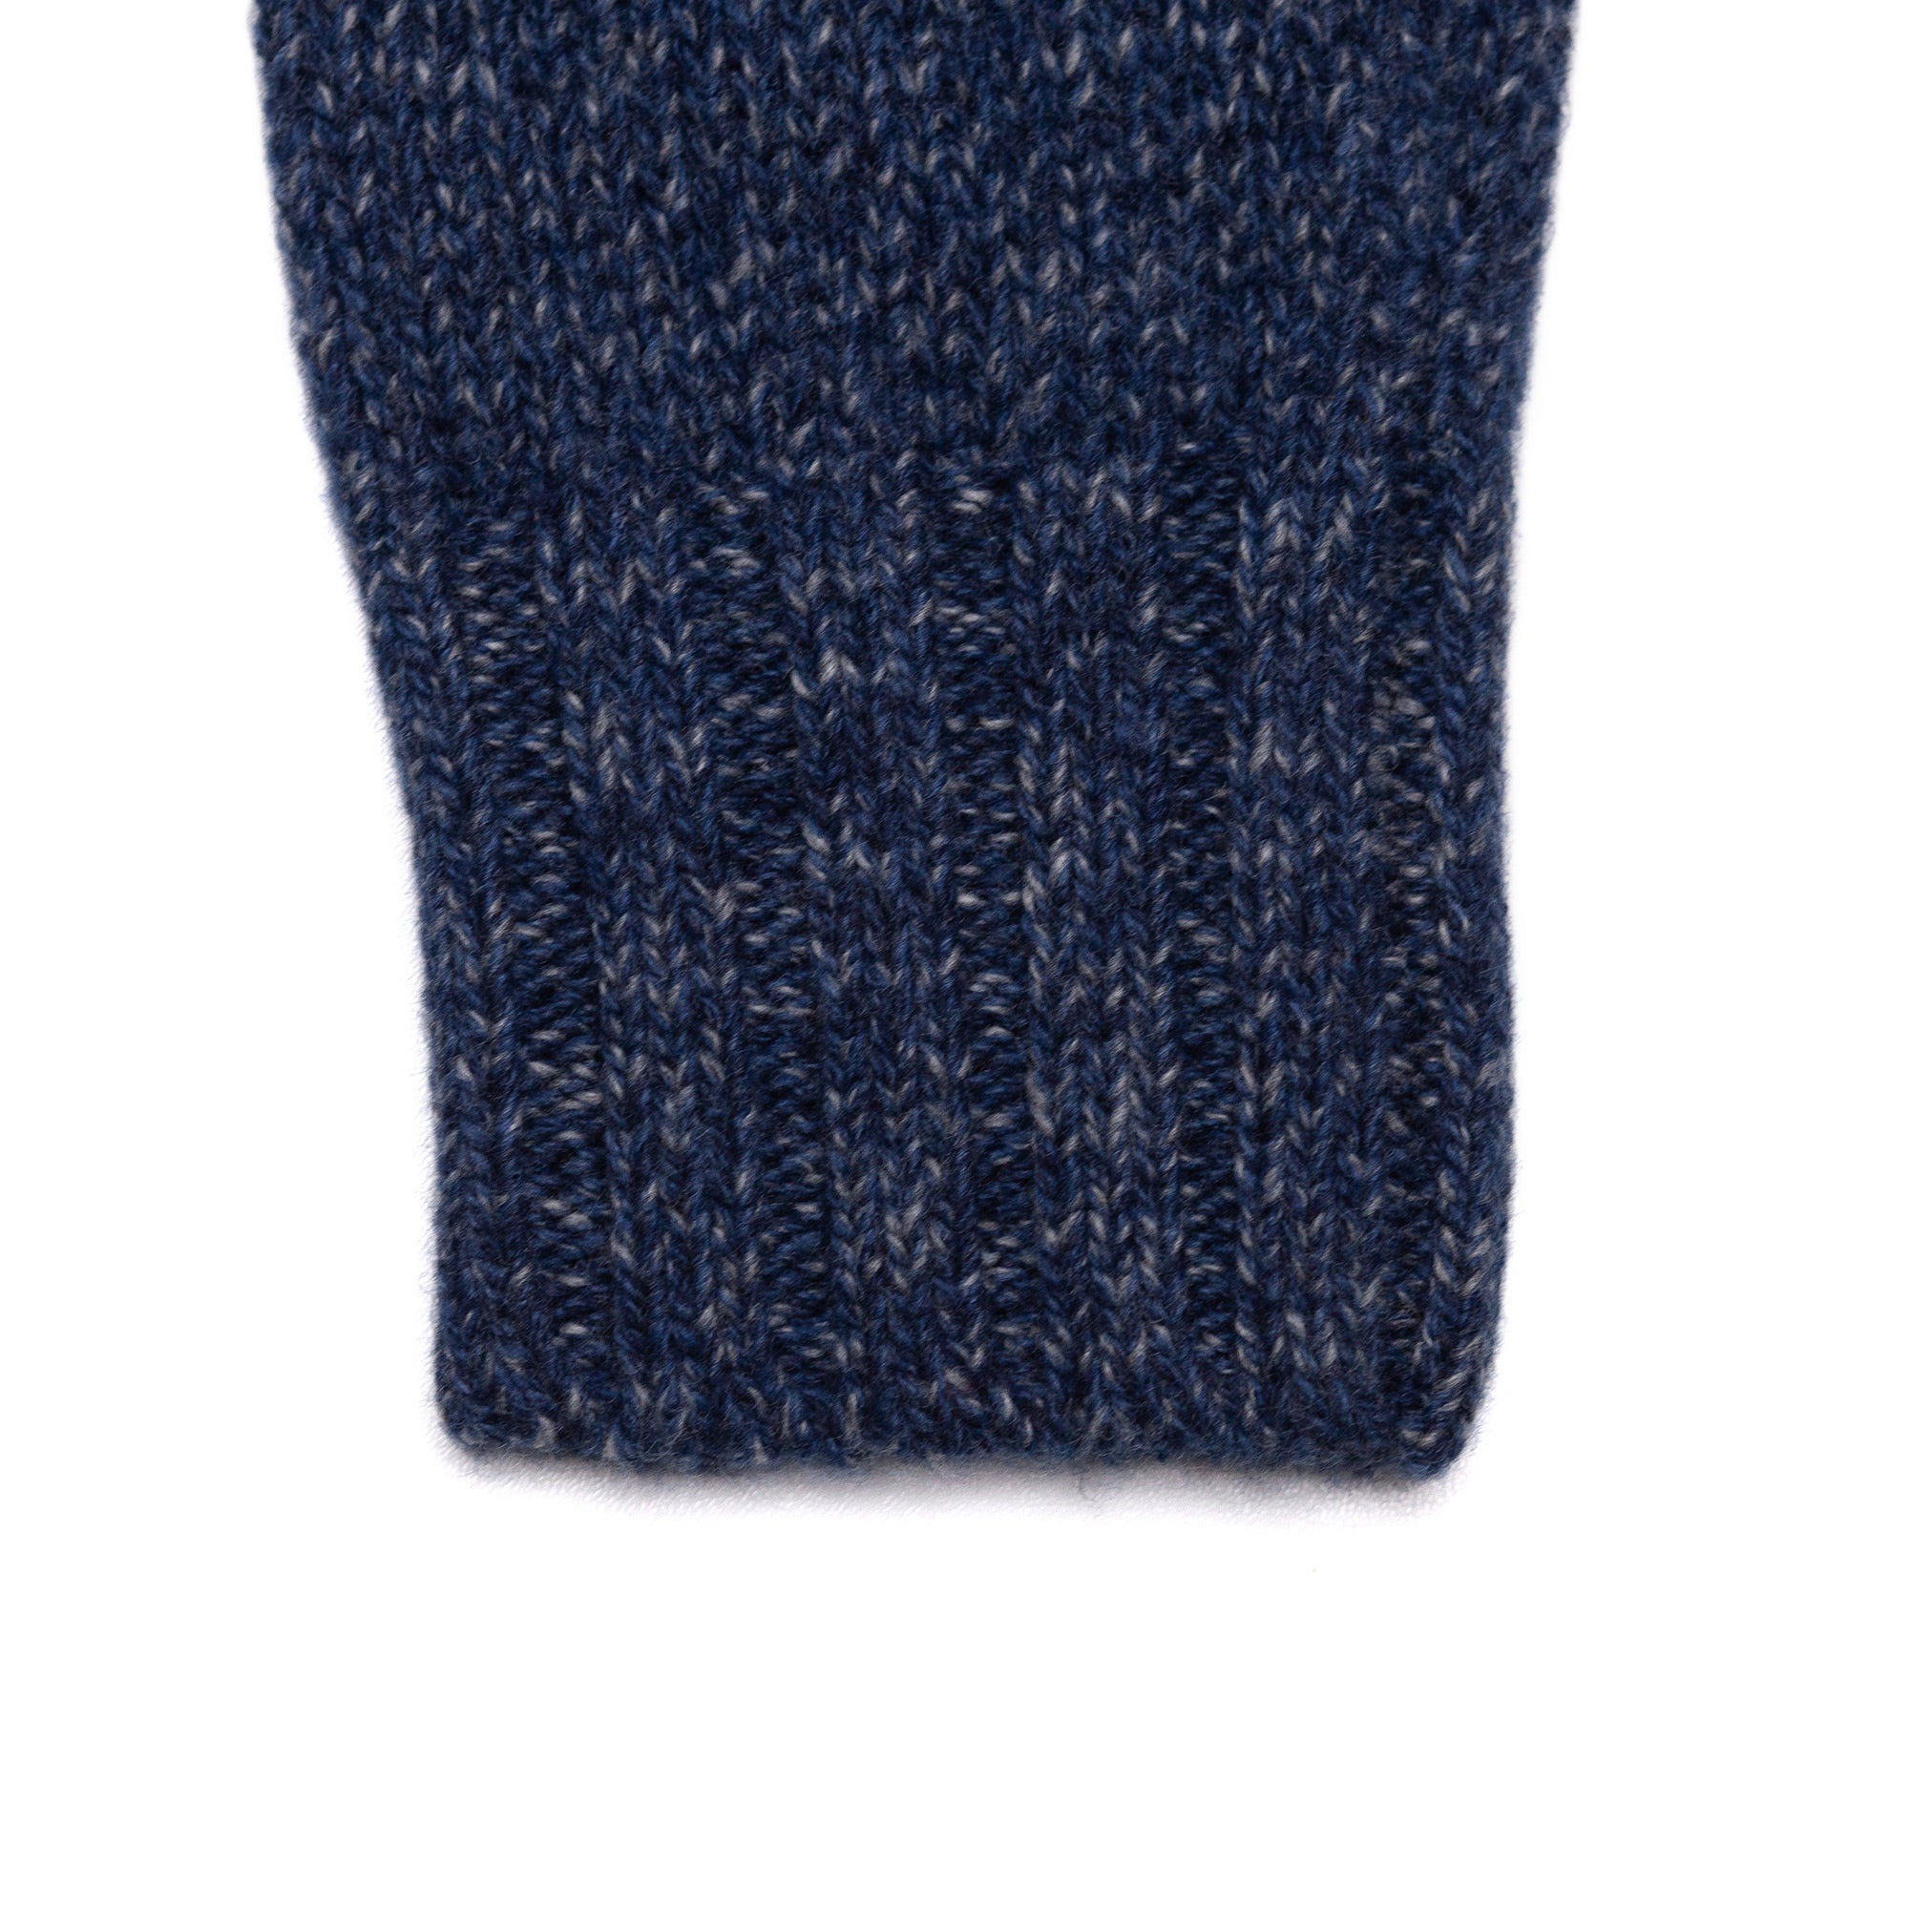 Rollneck Sweater in Blue Melange